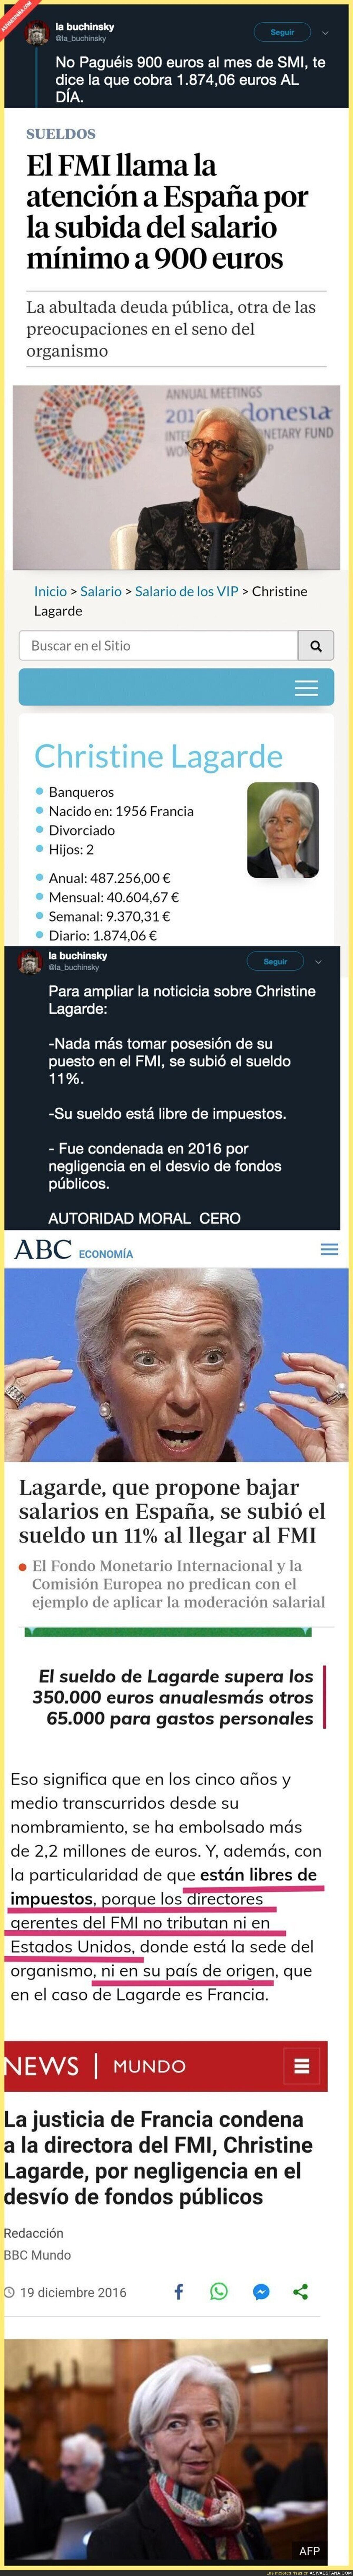 Hay que ser sinvergüenz para criticar a España con la situación de Christine Lagarde